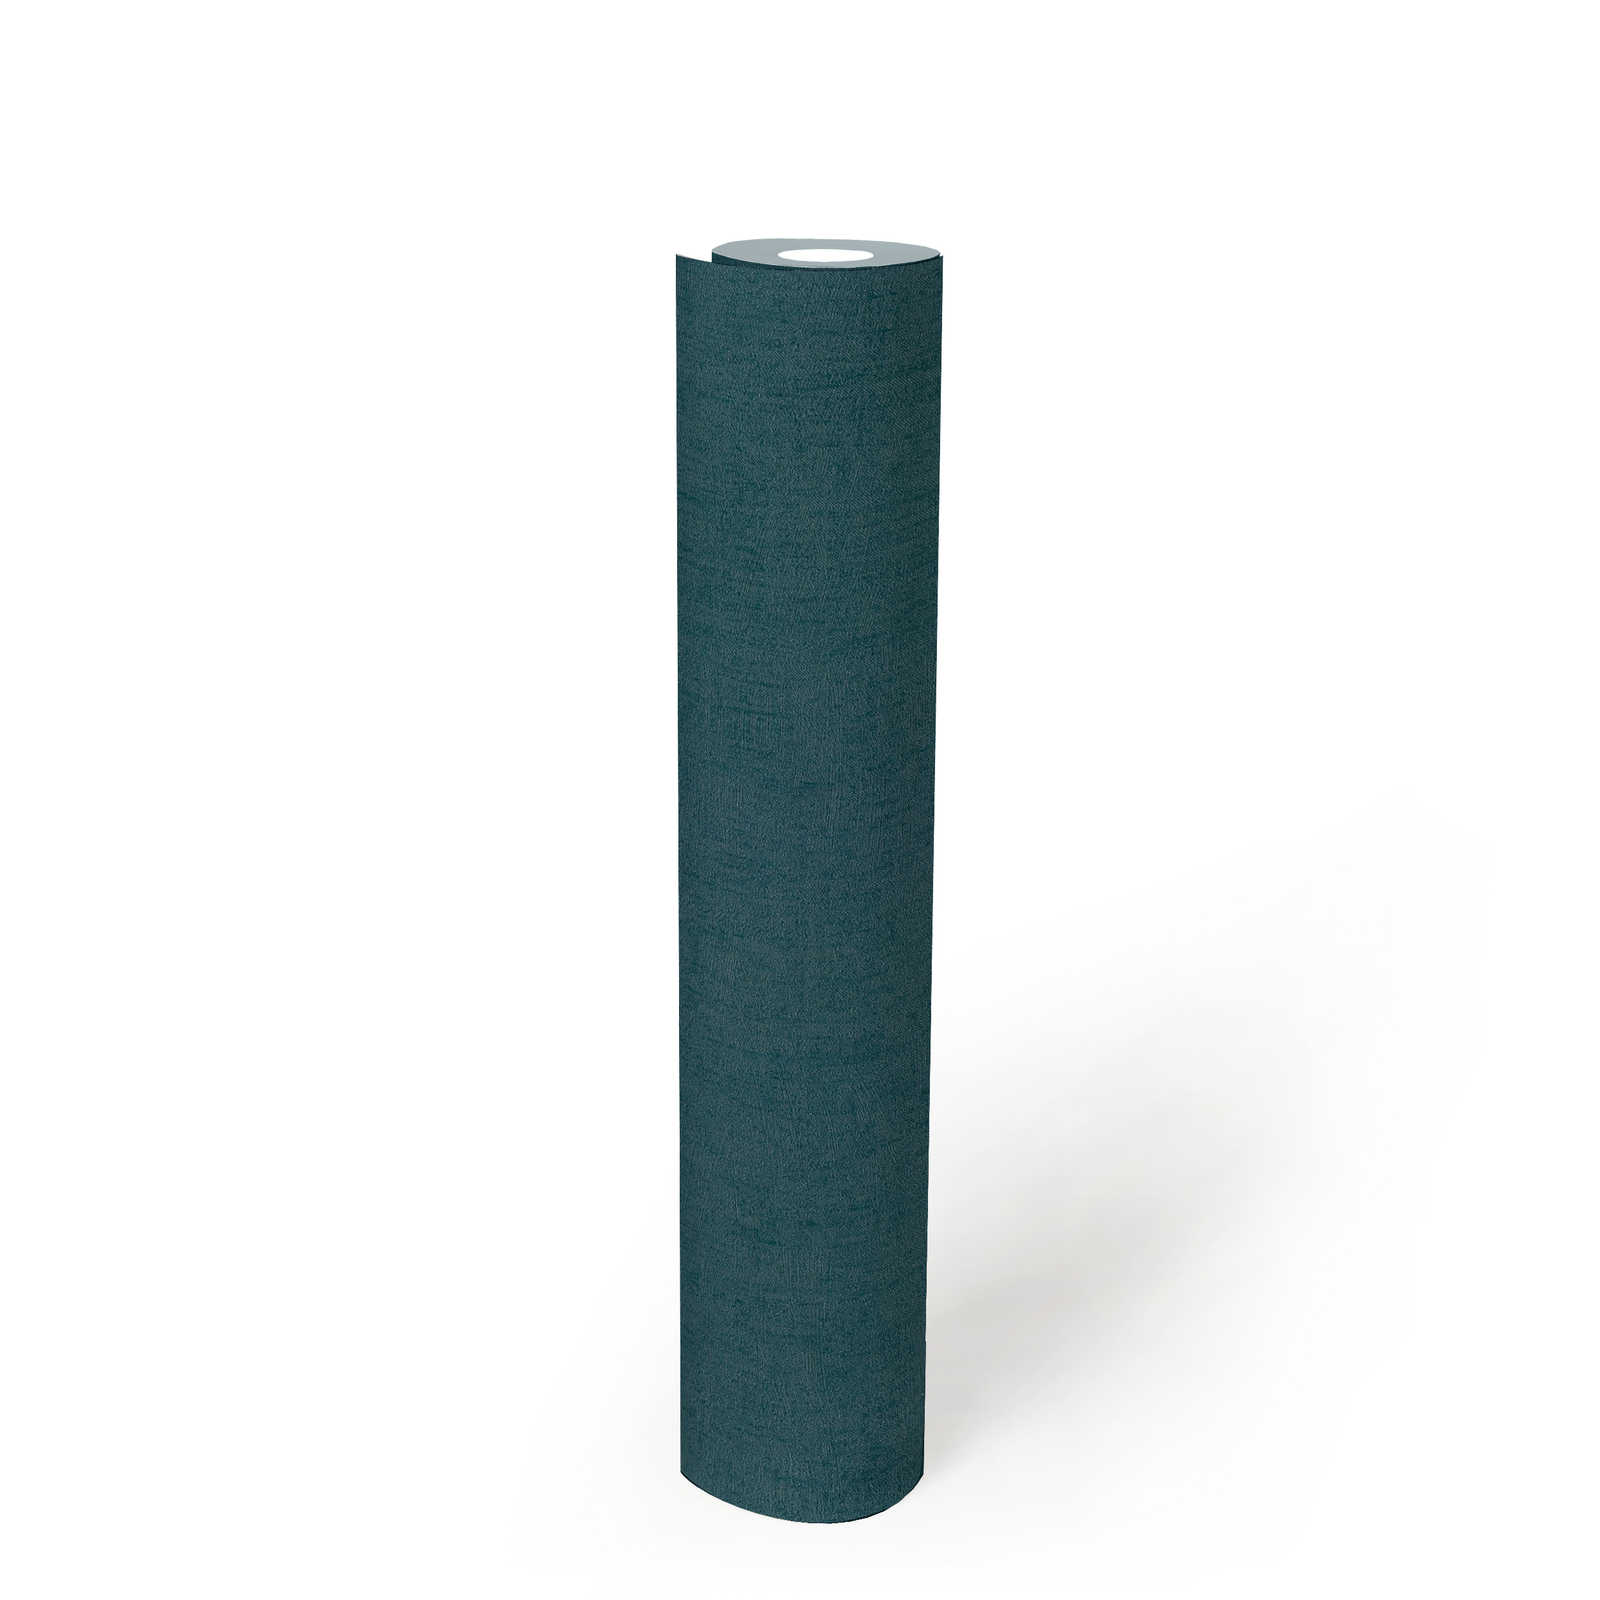             Papier peint structuré pétrole avec effet brillant - bleu, vert, métallique
        